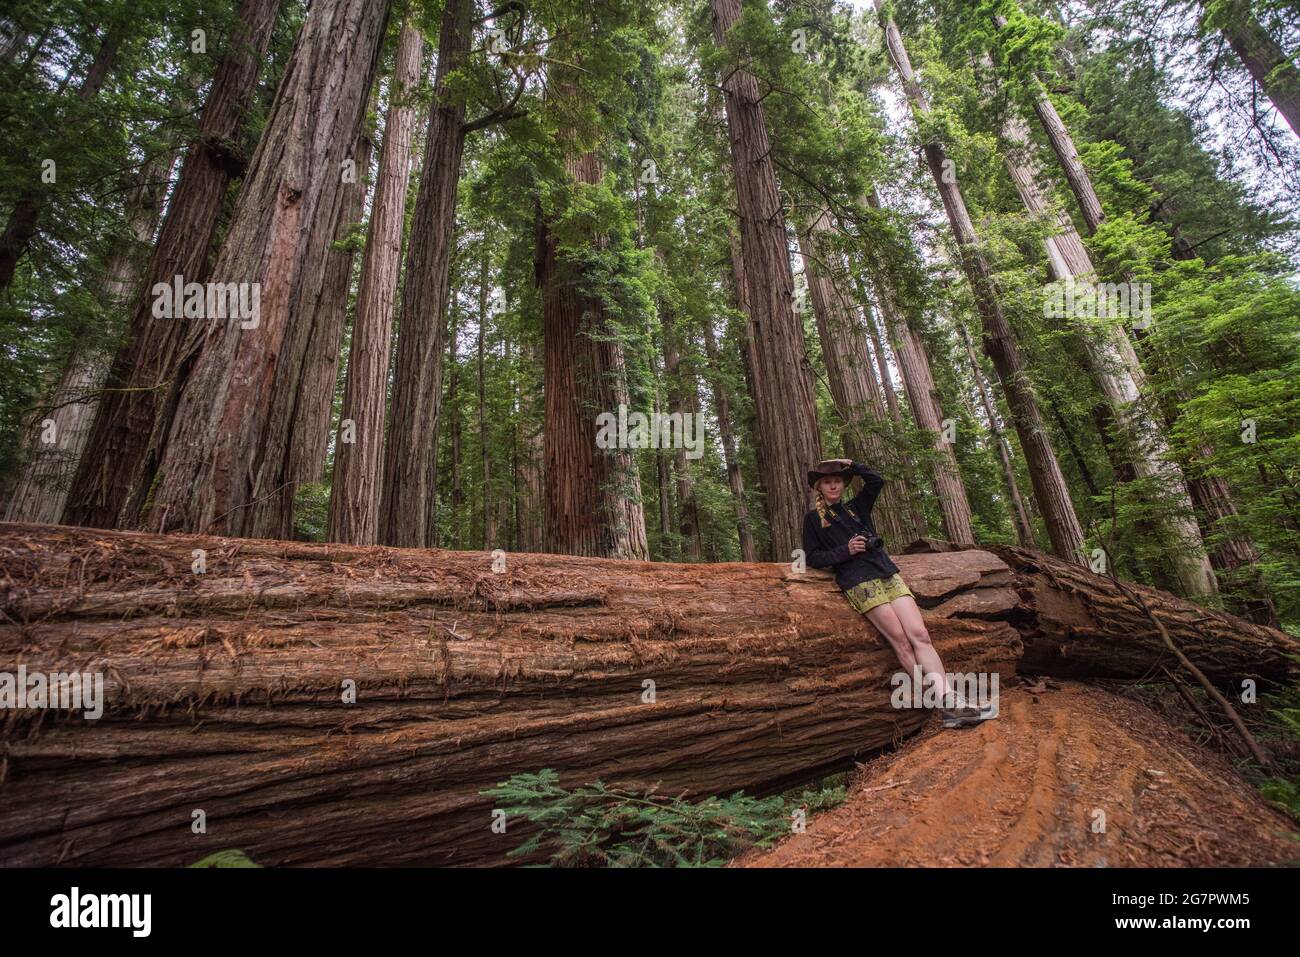 Una caminadora femenina apoyada contra un tronco de secoya caído (Sequoia sempervirens) en el parque estatal de secoyas Jedediah smith en el norte de California, Estados Unidos. Foto de stock